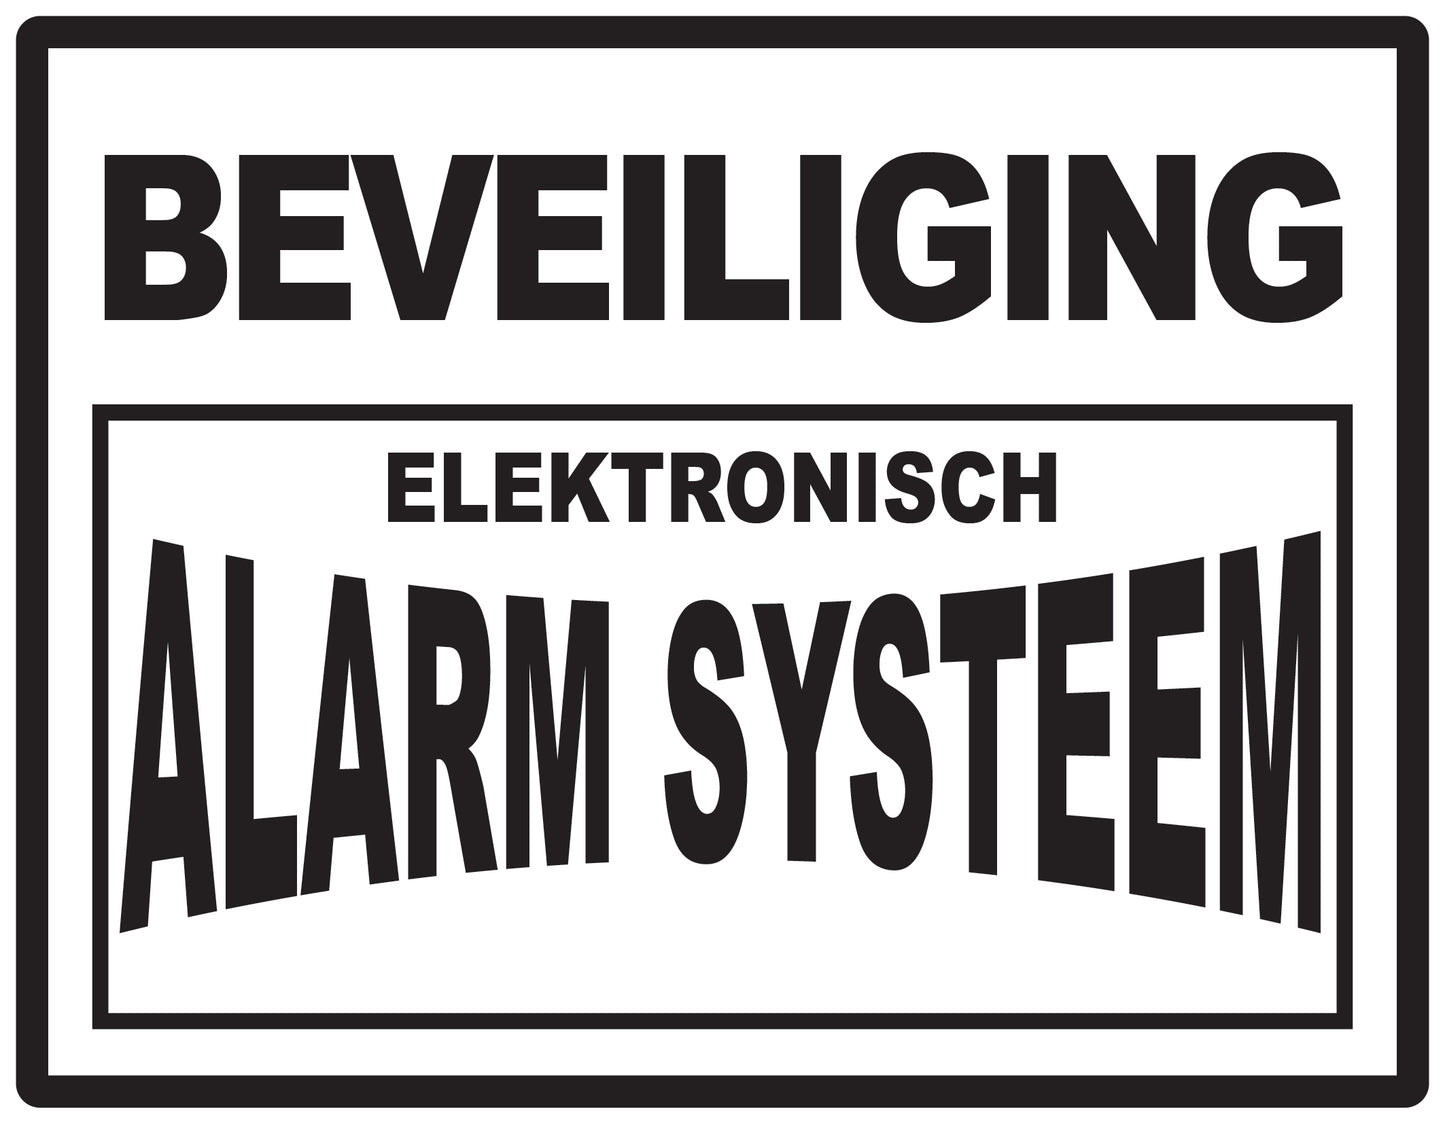 Alarm sticker 2-7 cm EW-ALARM-H-11000-88 Materiaal : transparant